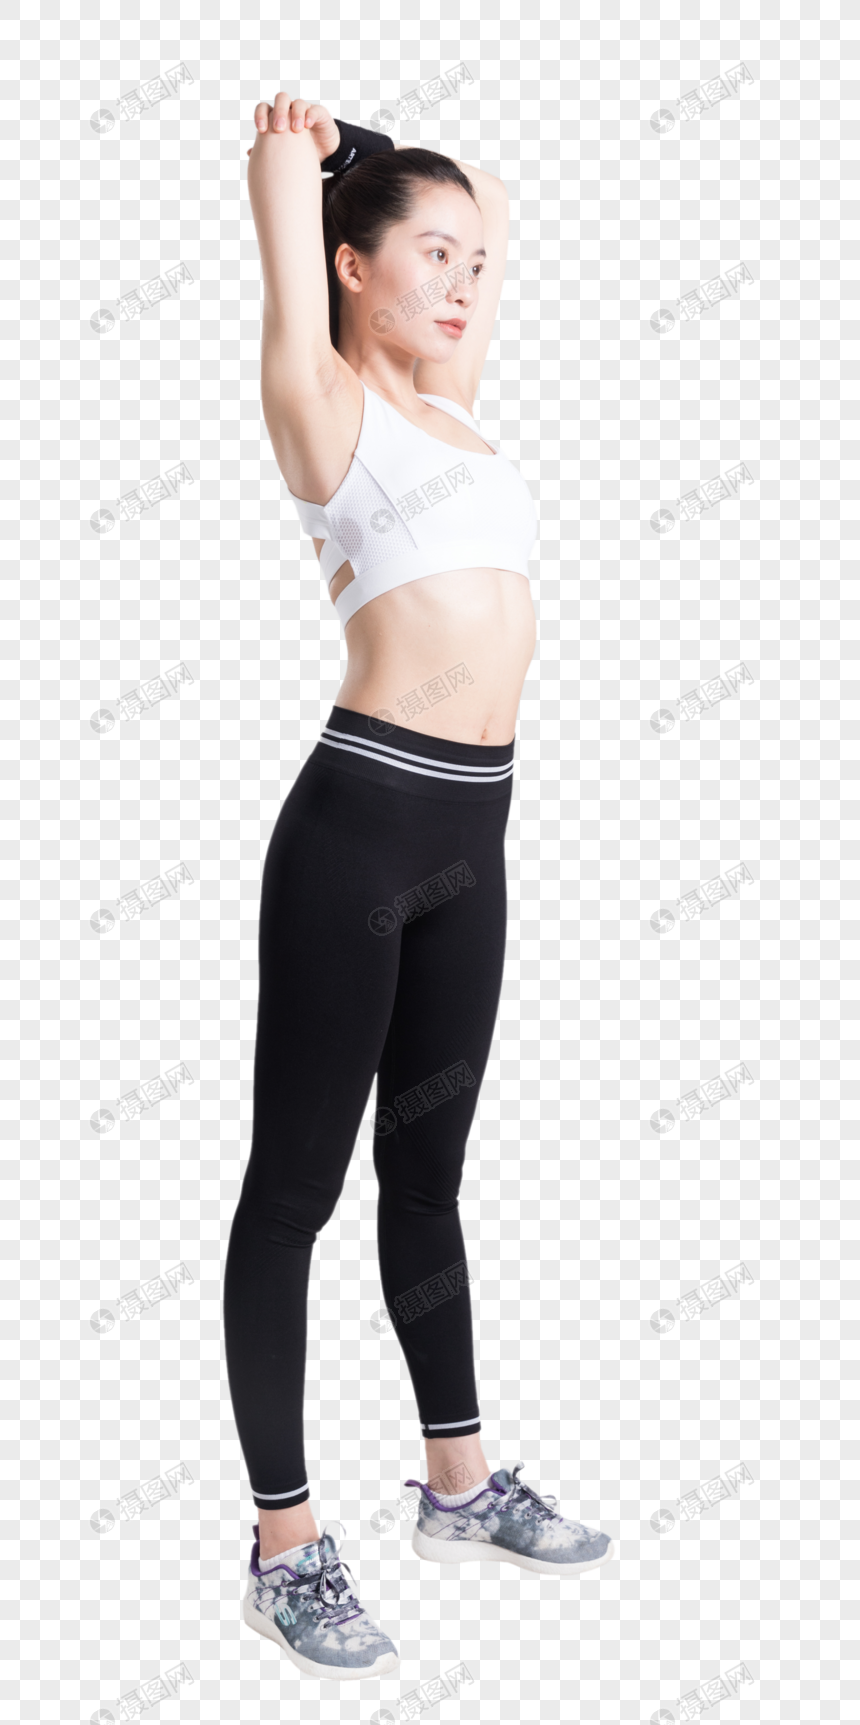 健身运动女性背部手臂拉伸动作图片